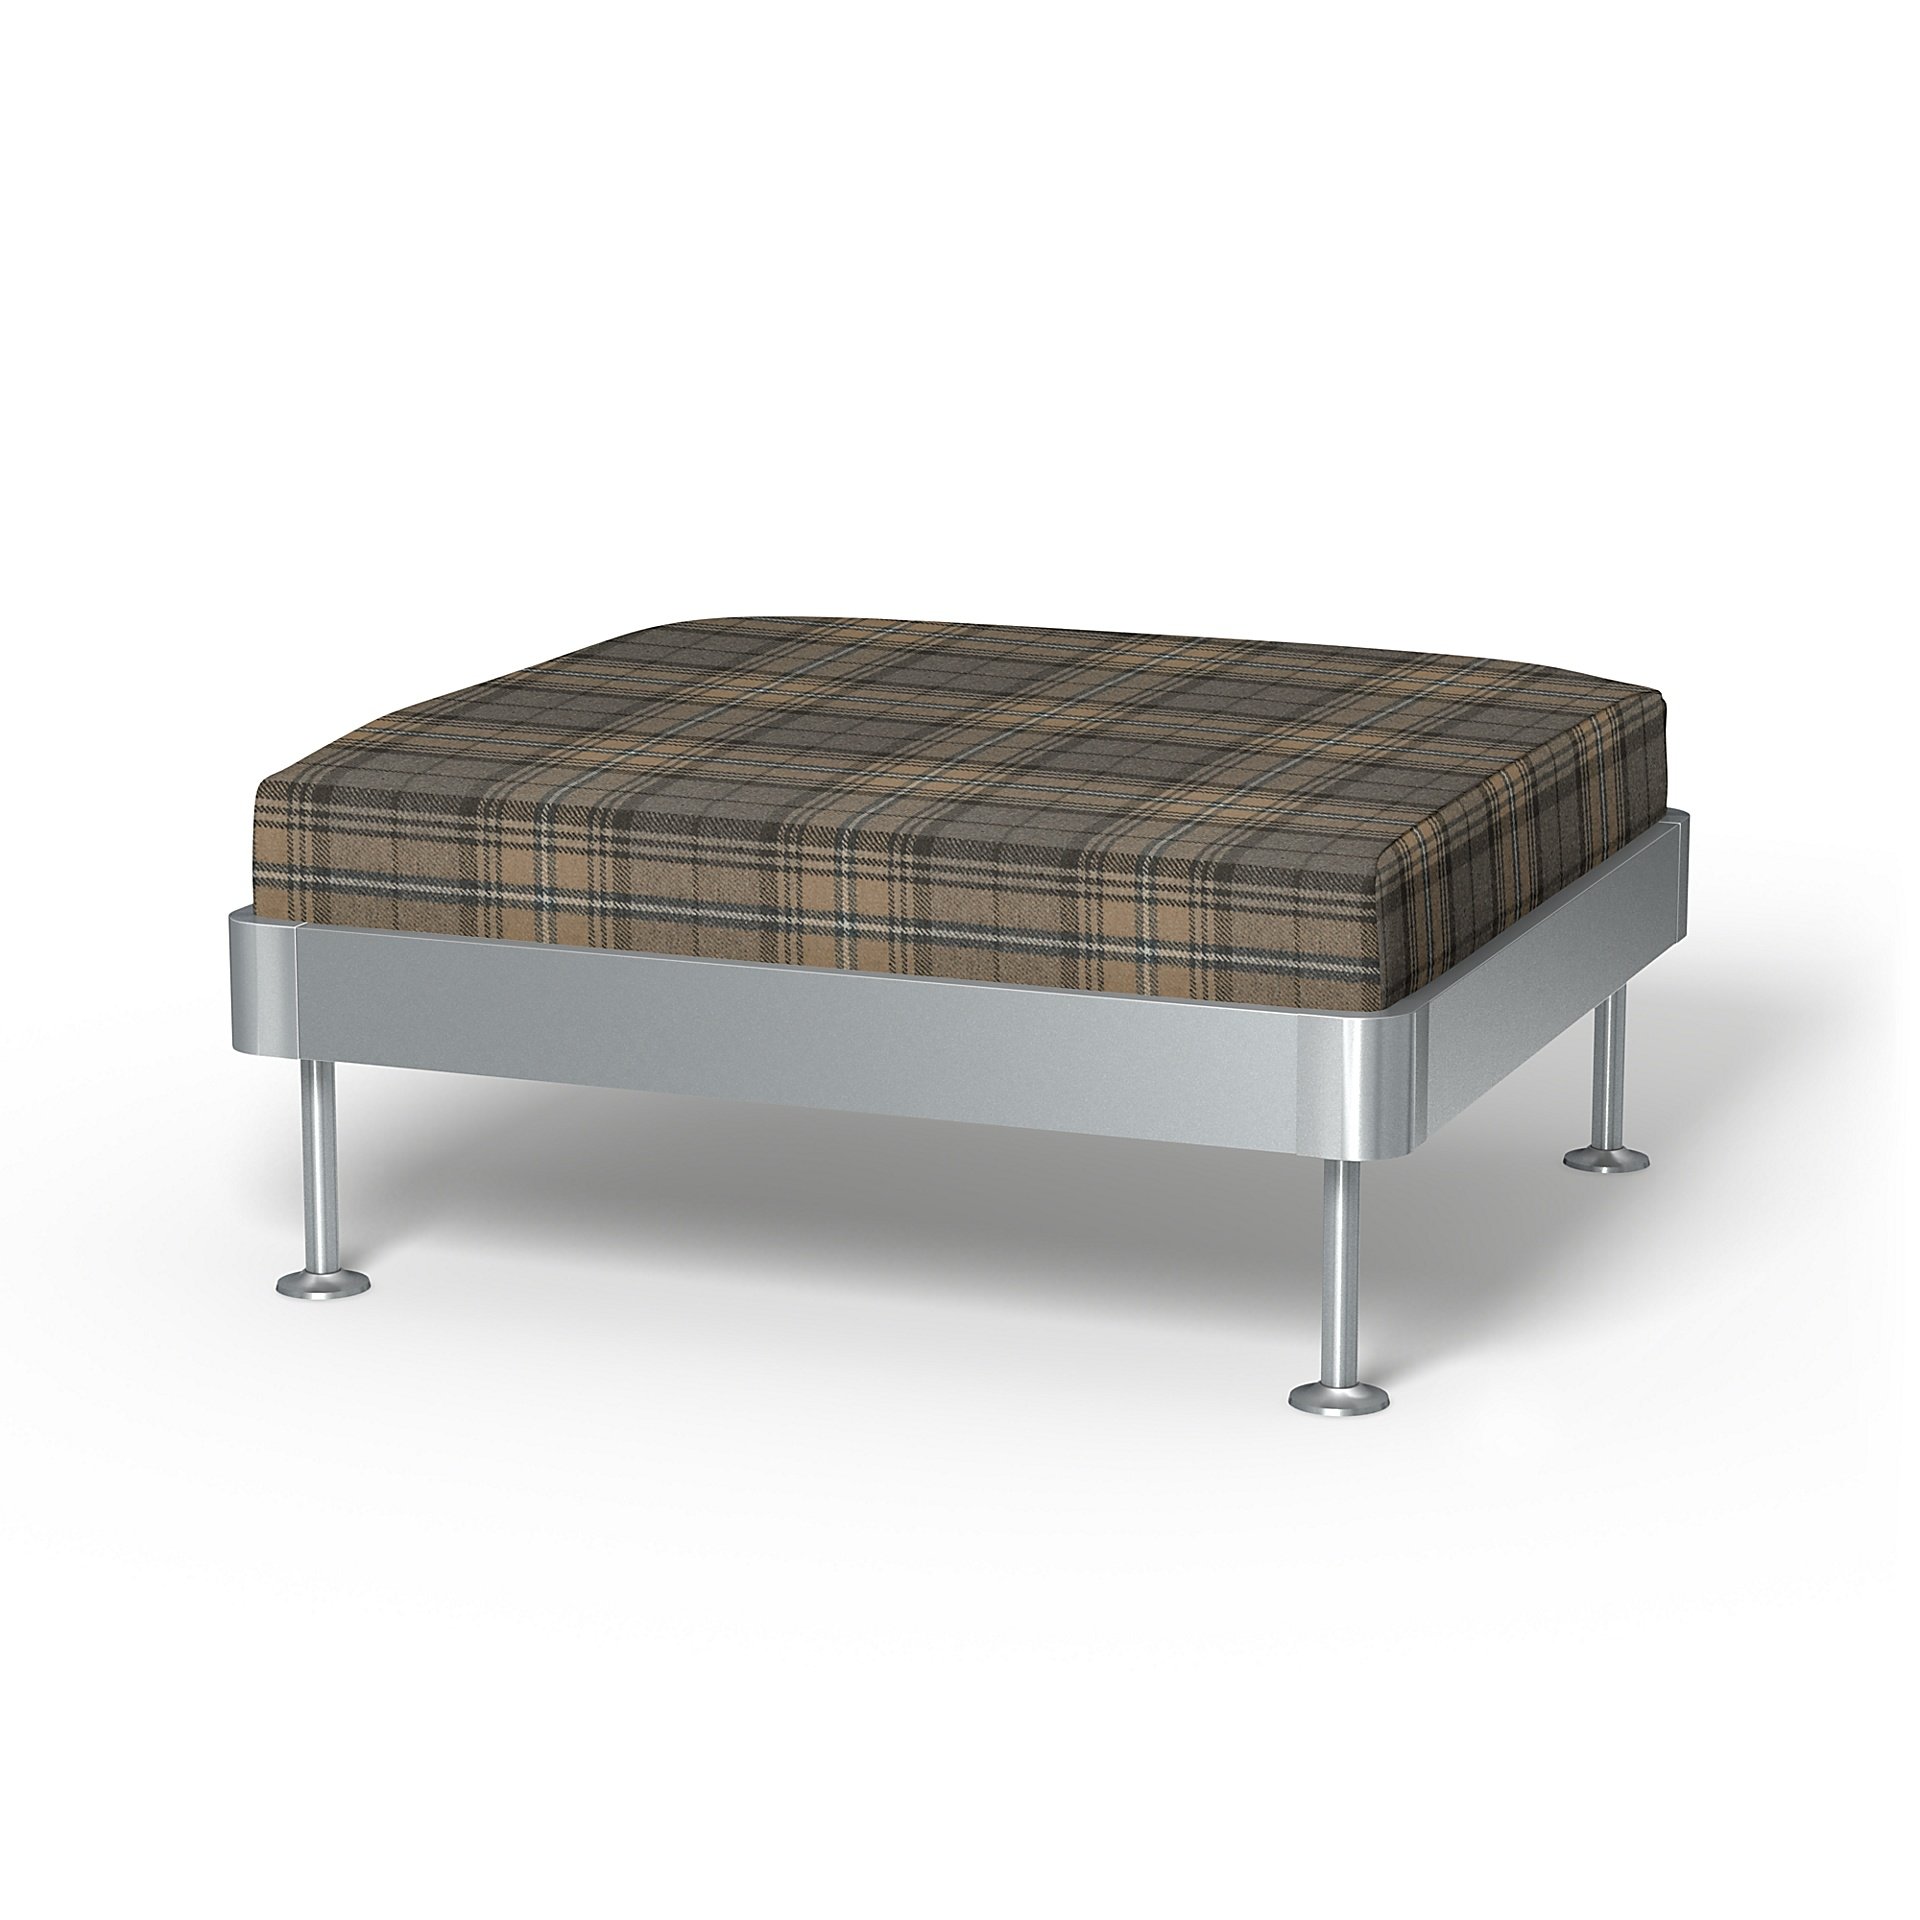 IKEA - Delaktig 1 Seat Platform Cover, Bark Brown, Wool - Bemz